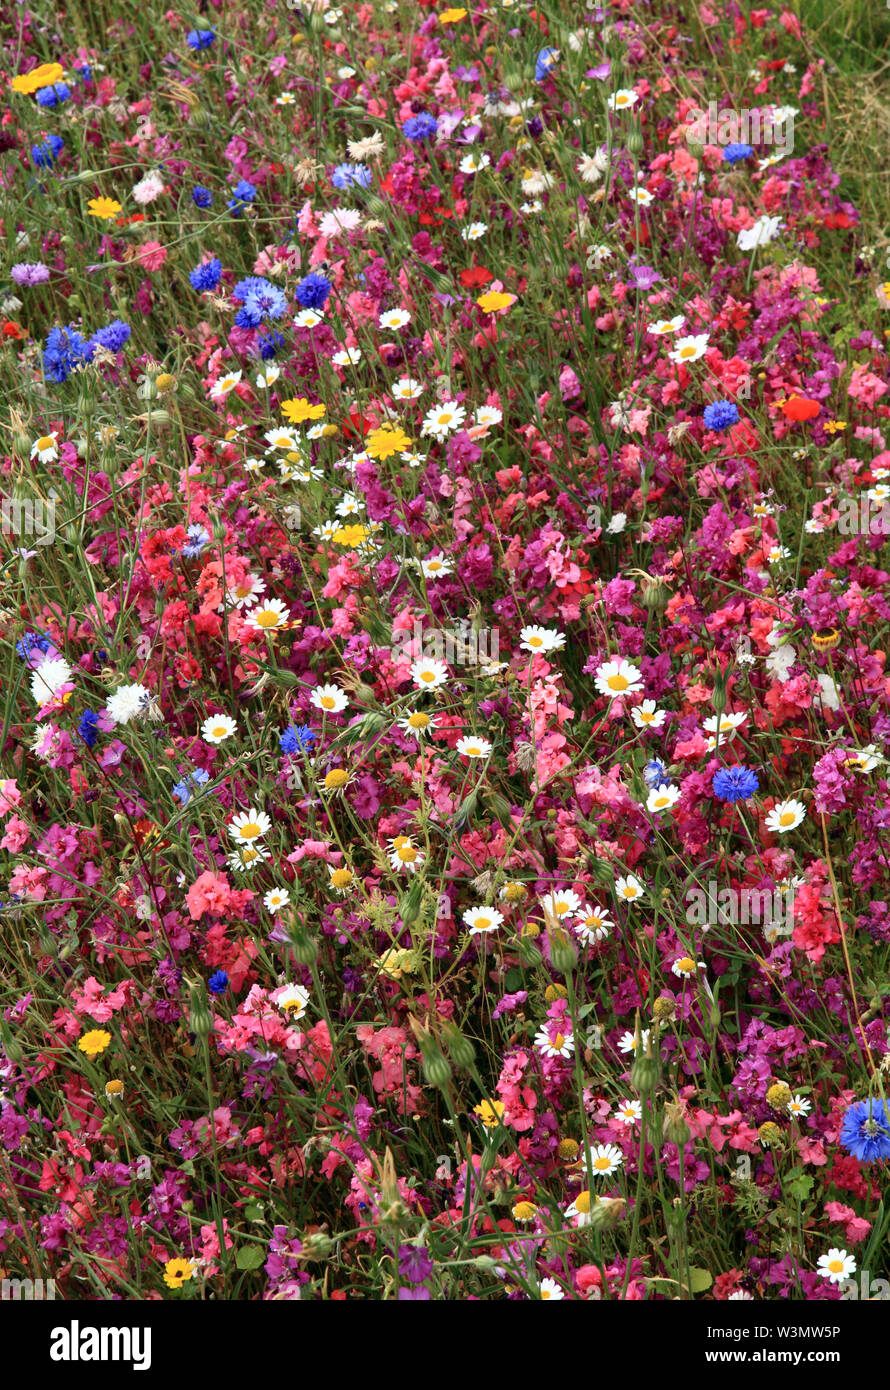 Fiore selvatico, giardino, semina, fiori, cornflowers, margherite, fiori selvatici, colorato, border, piantagione di massa Foto Stock